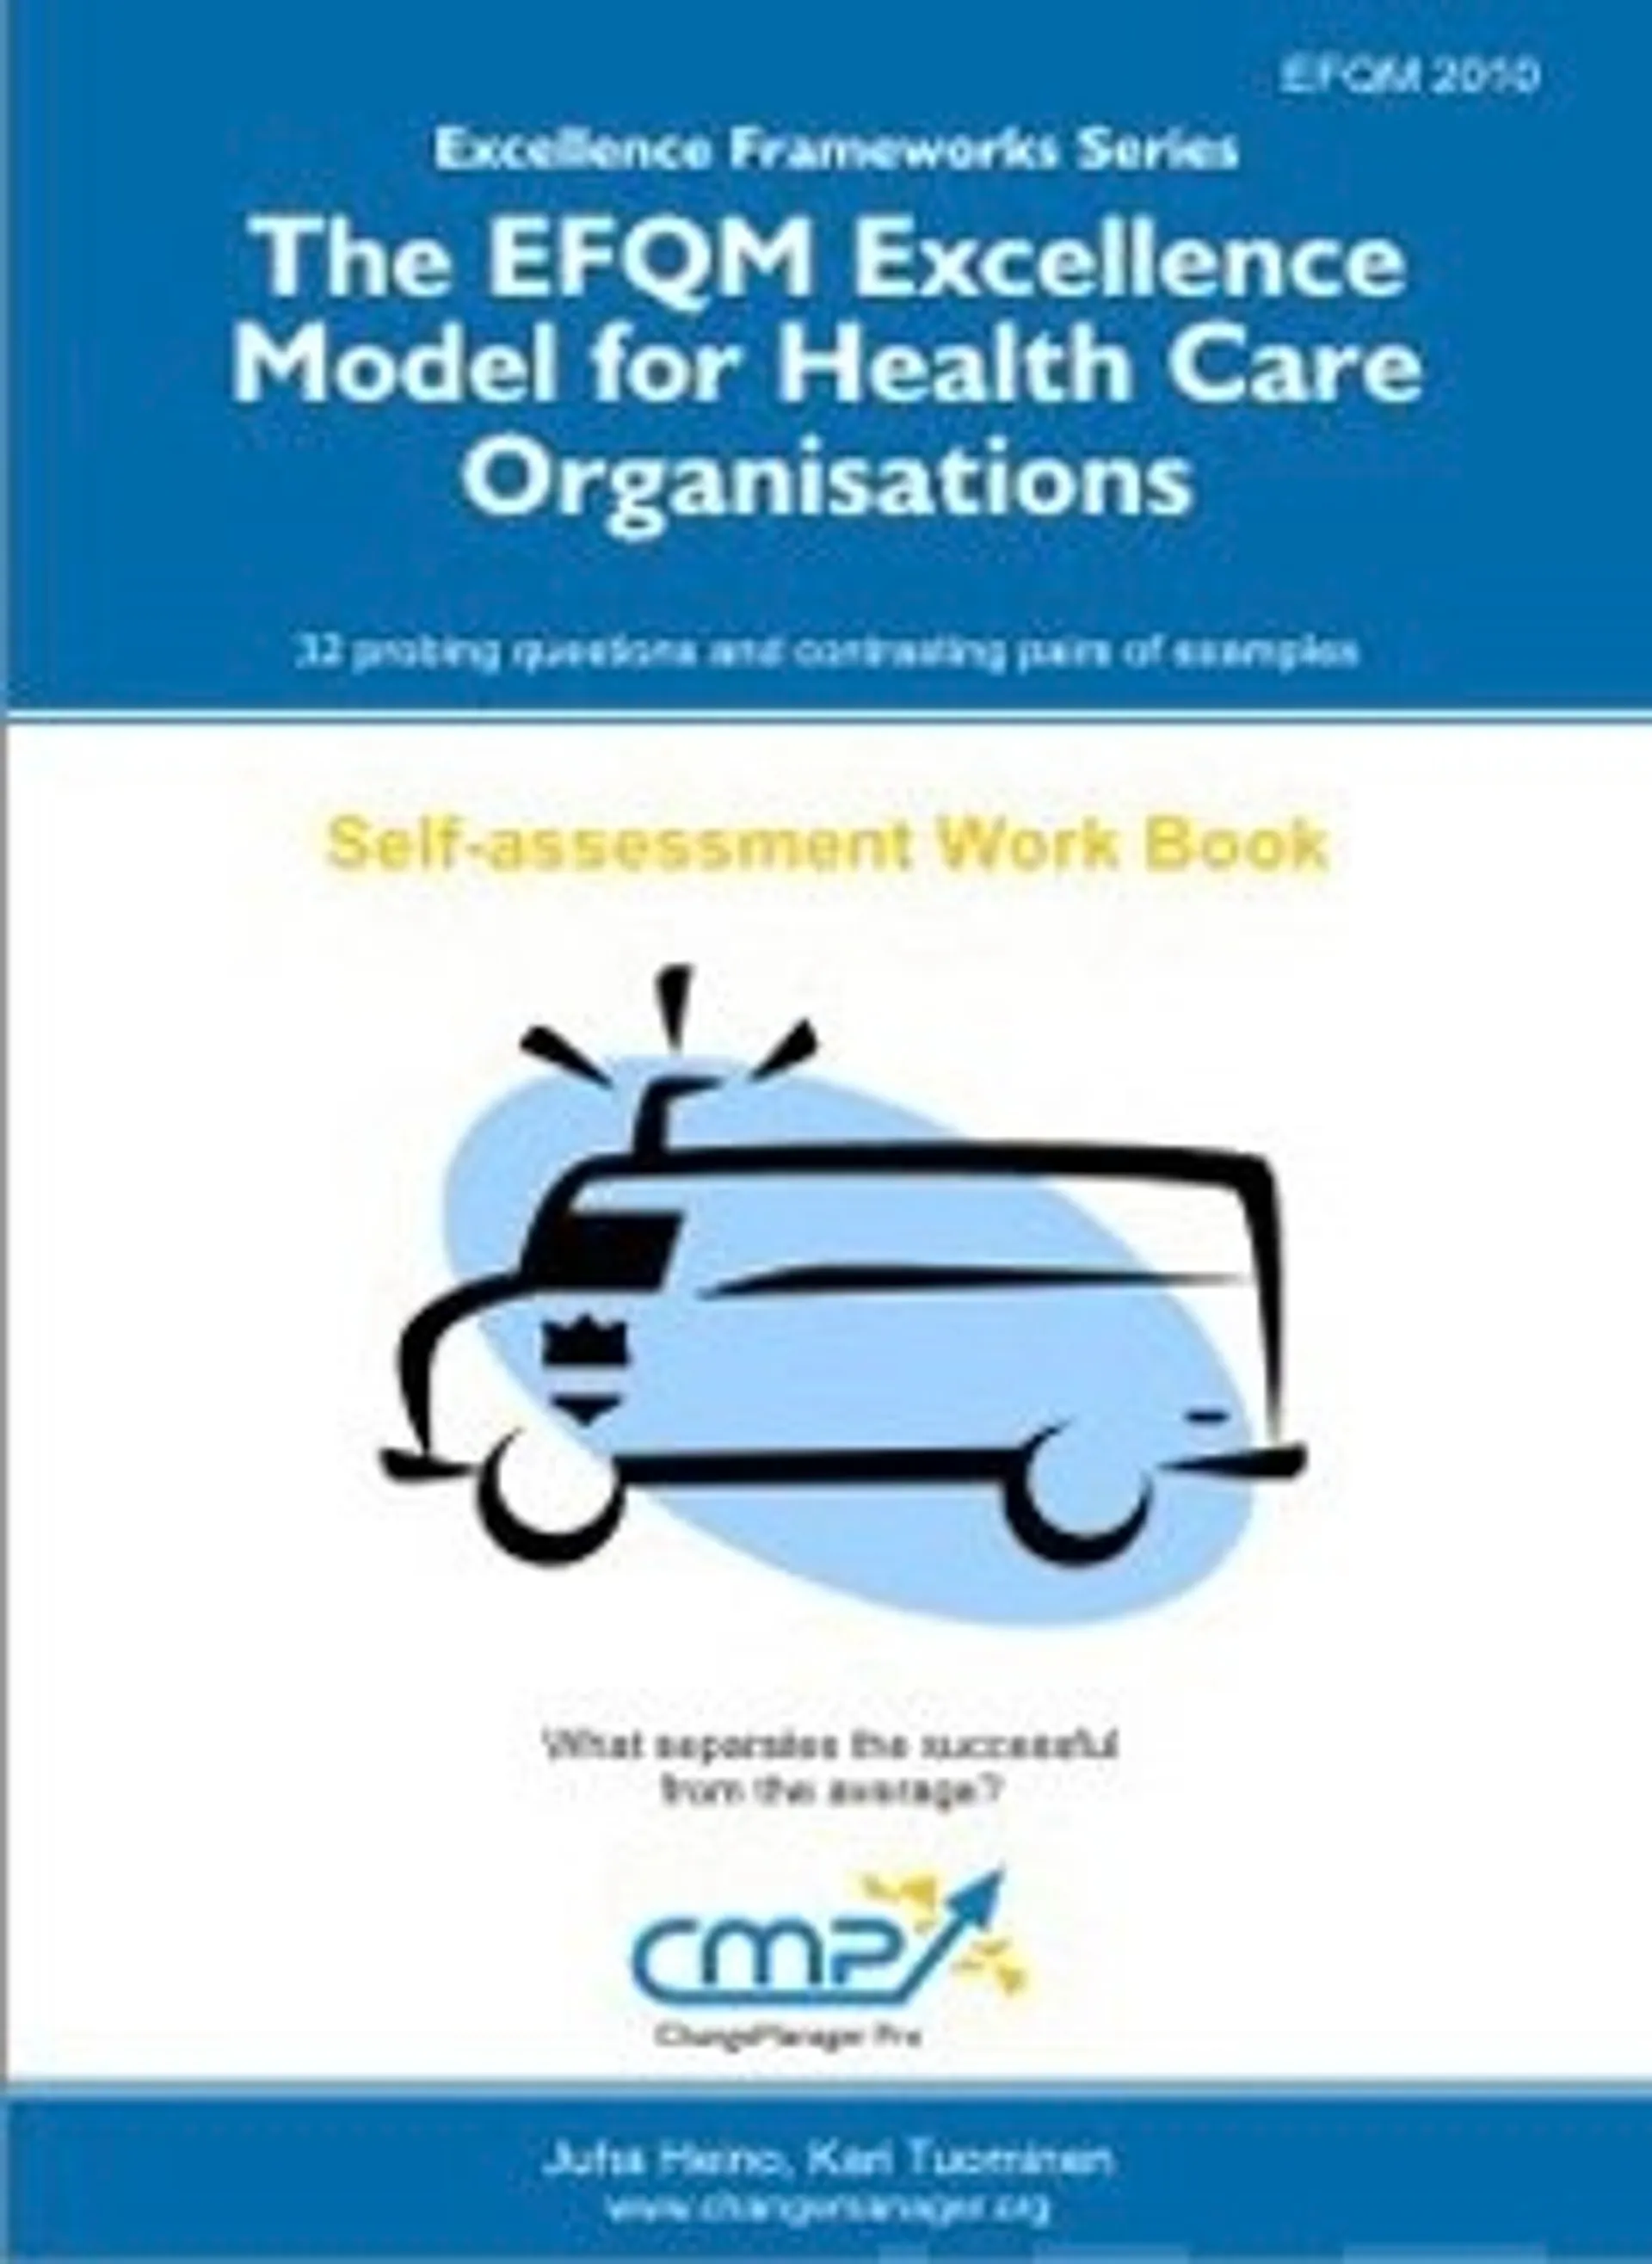 The EFQM Excellence Model for Health Care Organisations - EFQM 2010